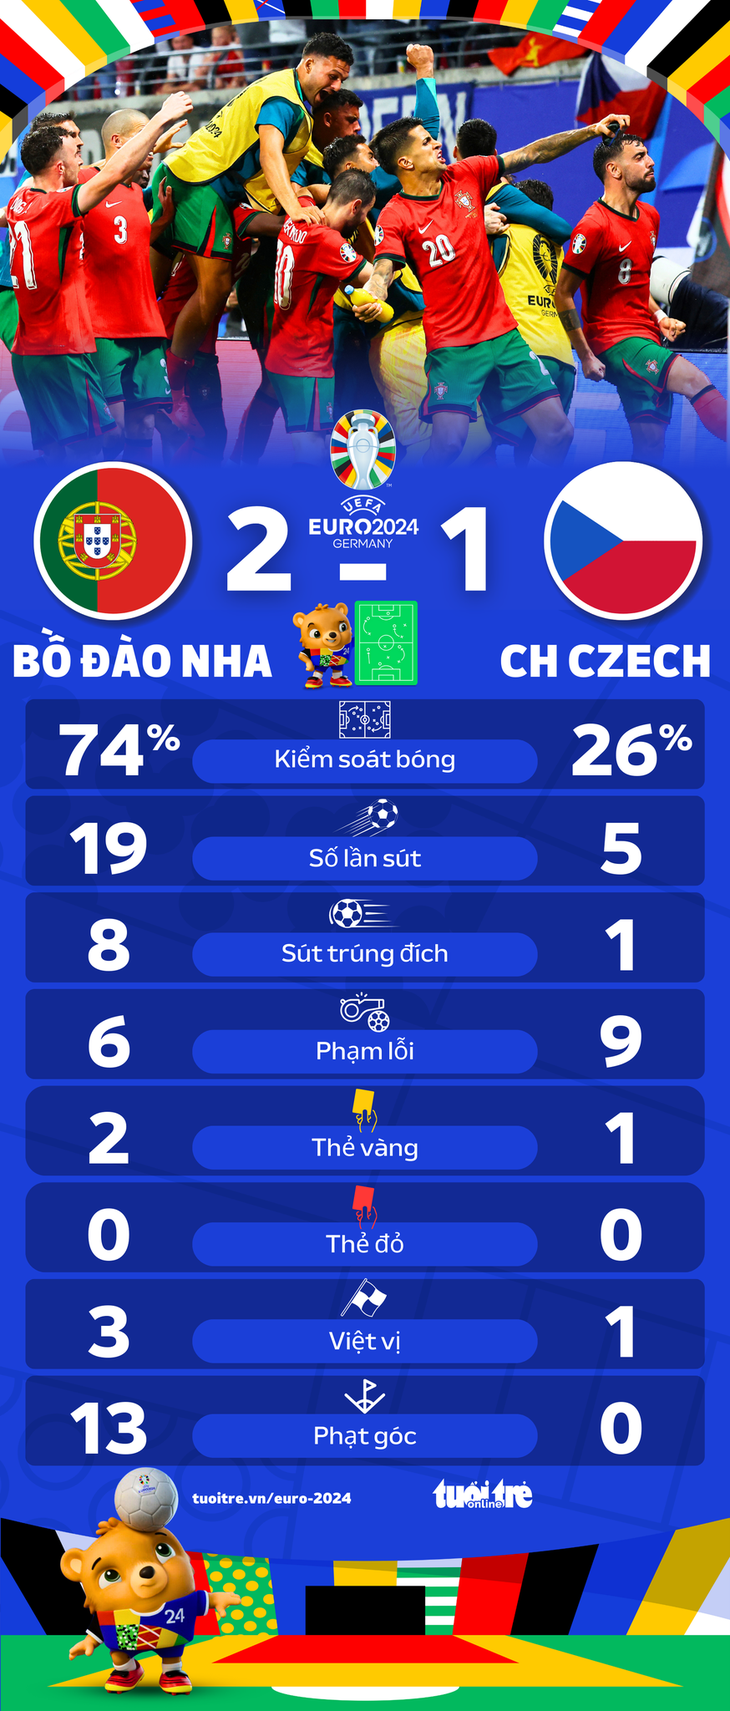 Bồ Đào Nha áp đảo mọi chỉ số trước CH Czech ở trận ra quân Euro 2024 - Đồ họa: AN BÌNH